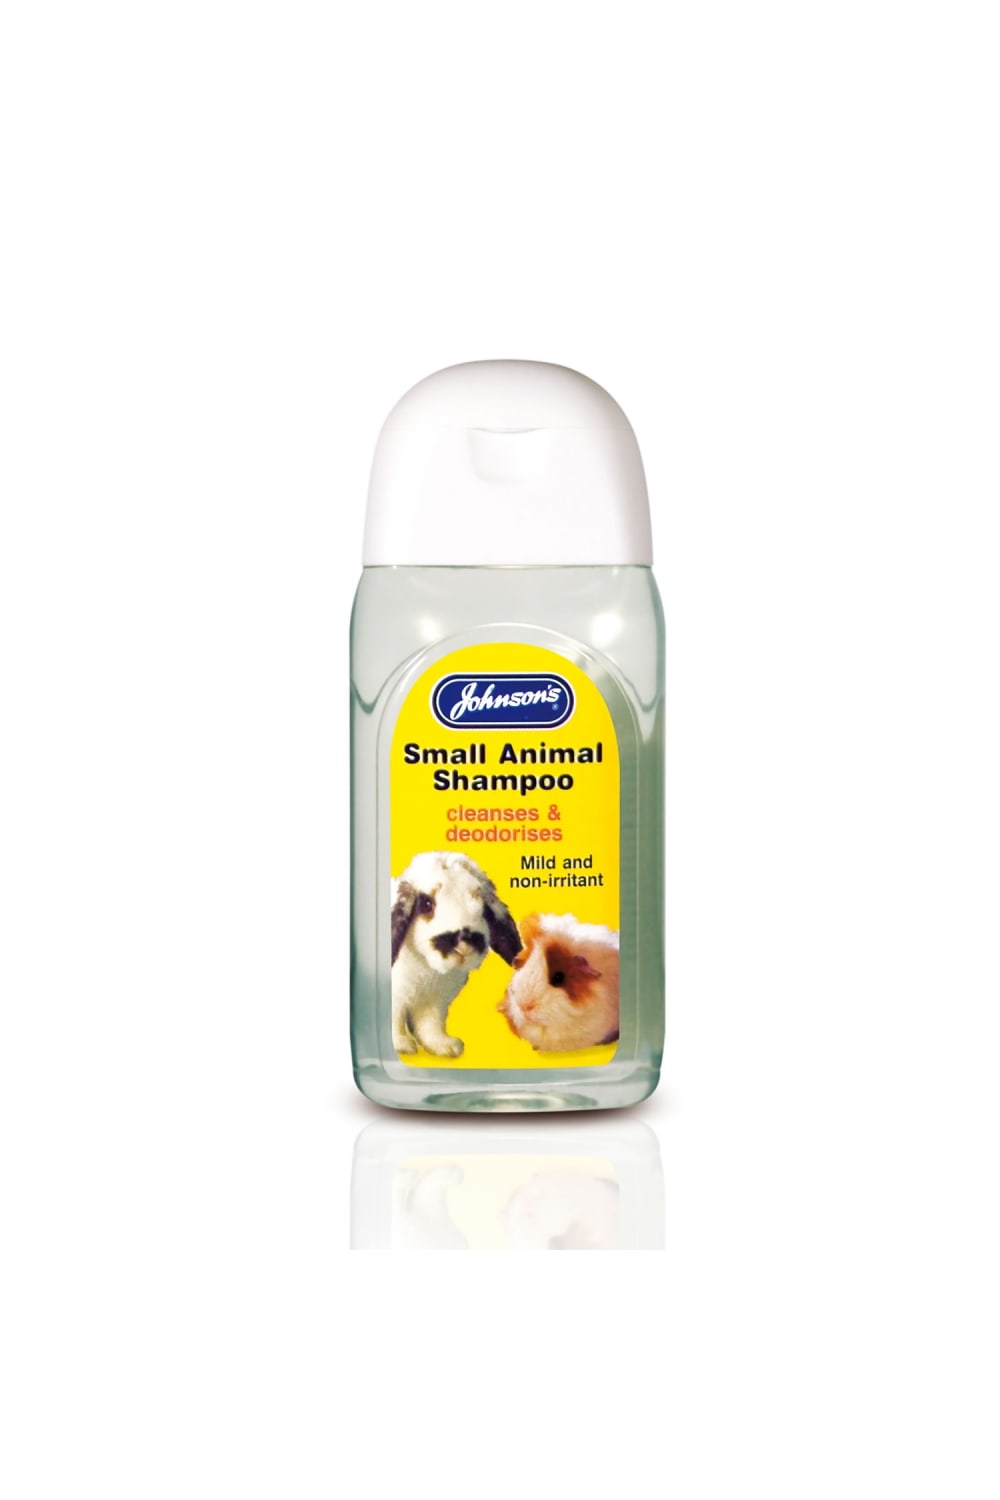 Johnsons Veterinary Small Animal Liquid Shampoo (May vary) (4.2 fl oz)